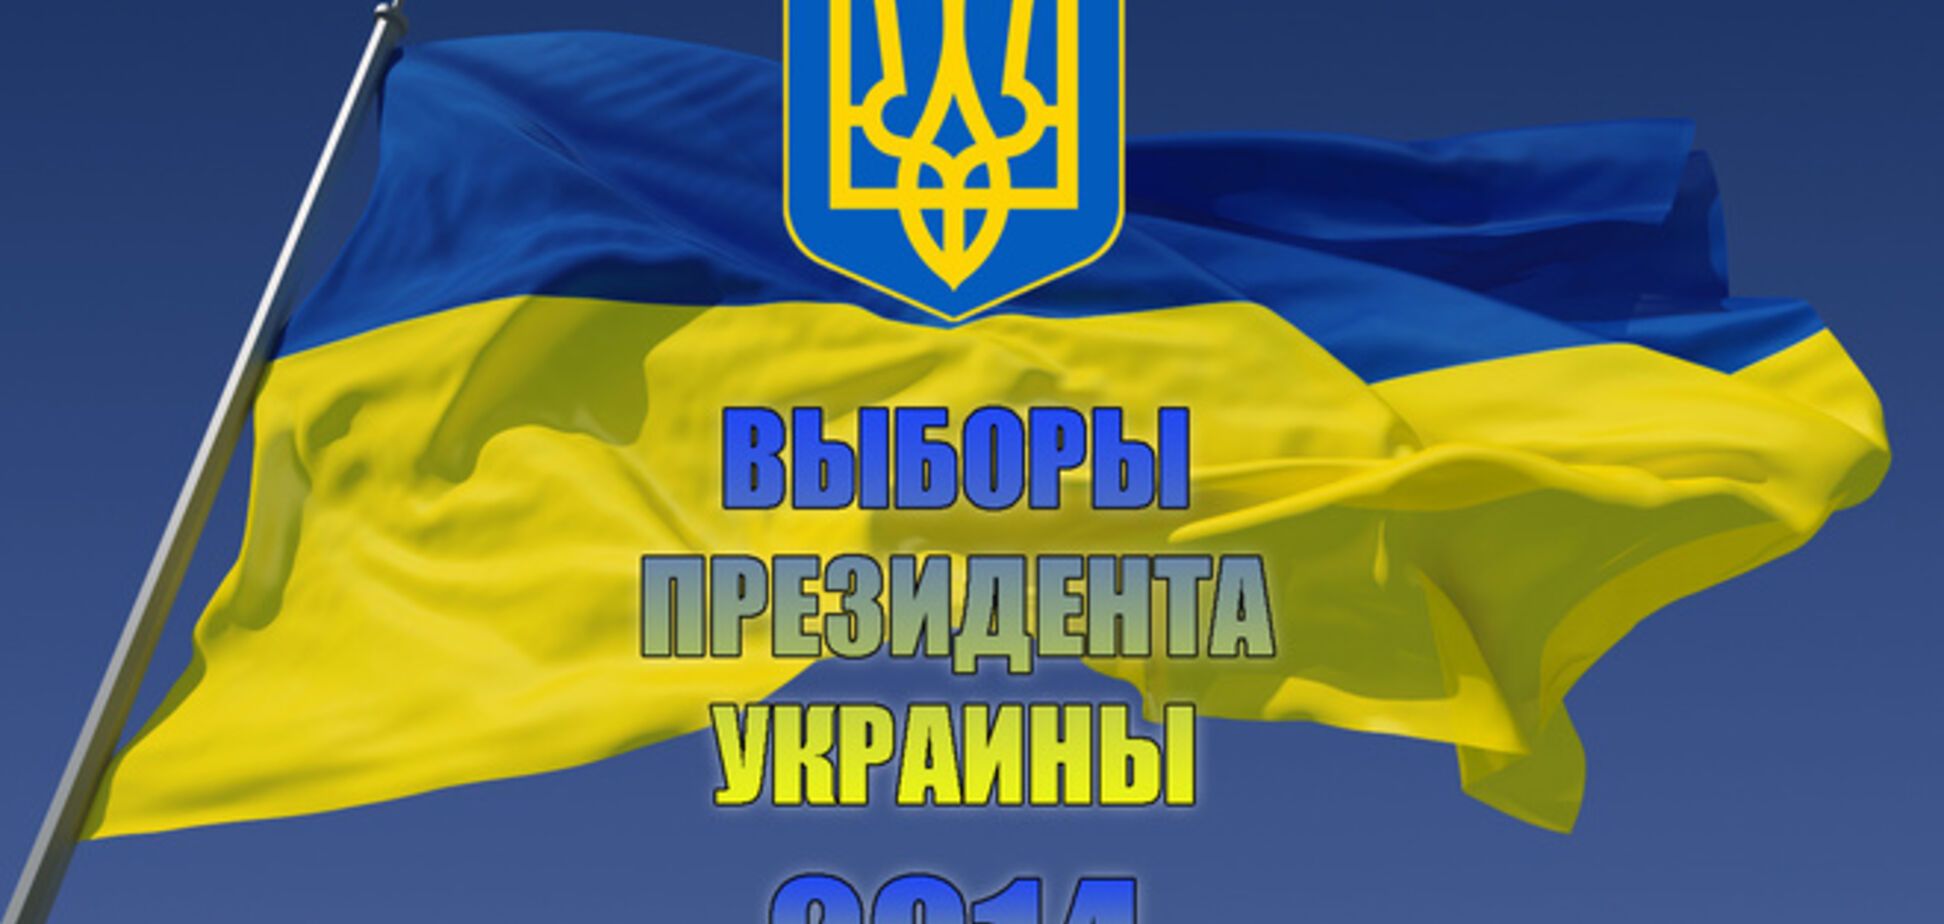 Голосовать на выборах 25 мая готовы 84% украинцев - опрос